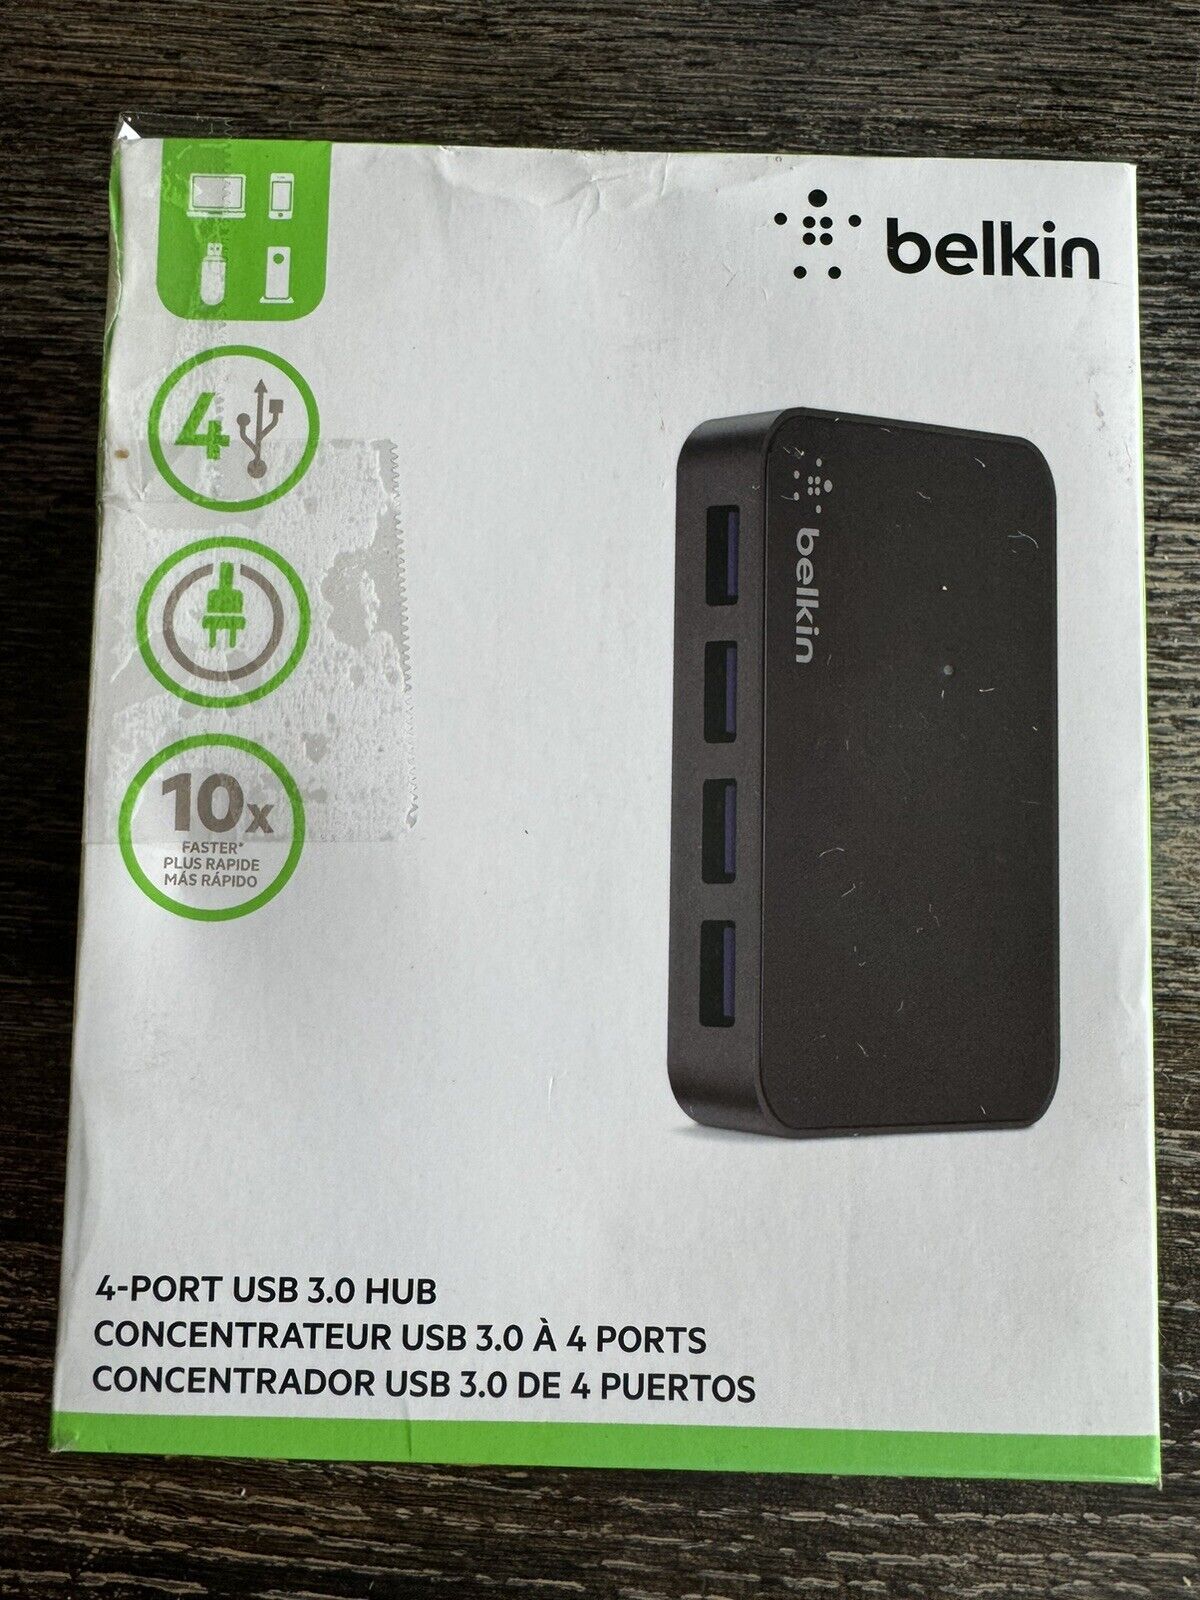 Belkin 4 port USB 3.0 HUB